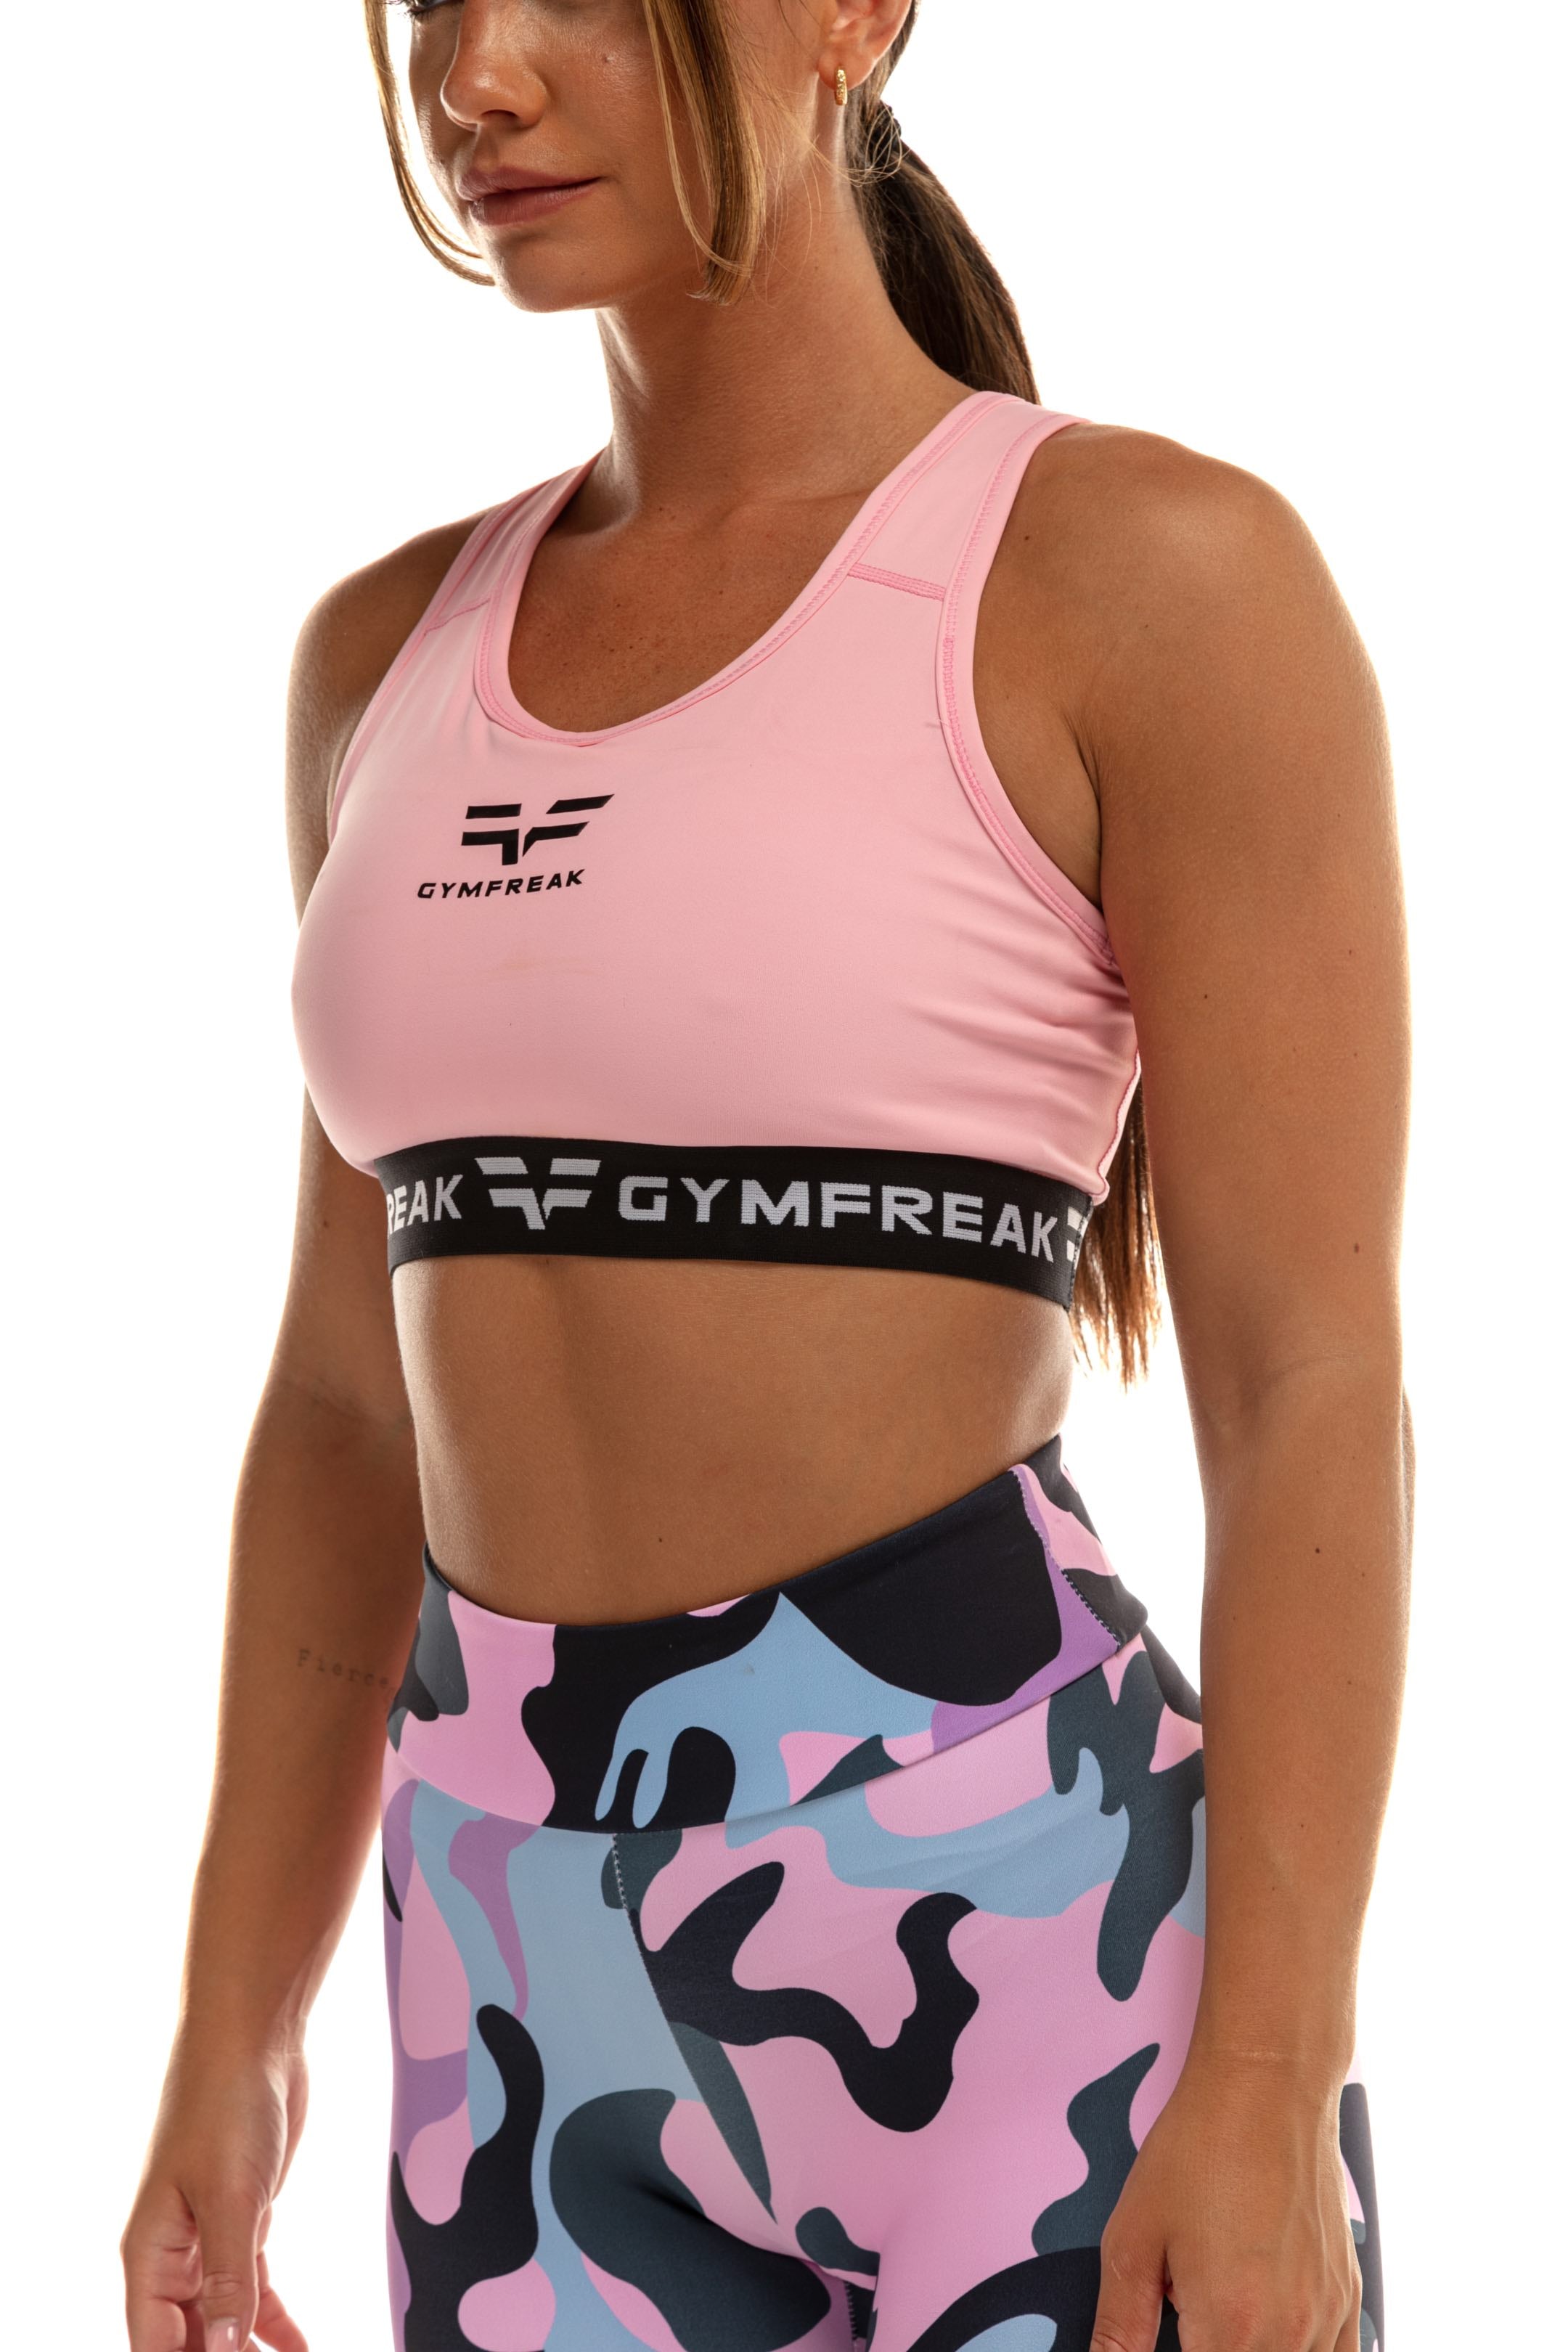 GymFreak Womens Pro Bra - Pink